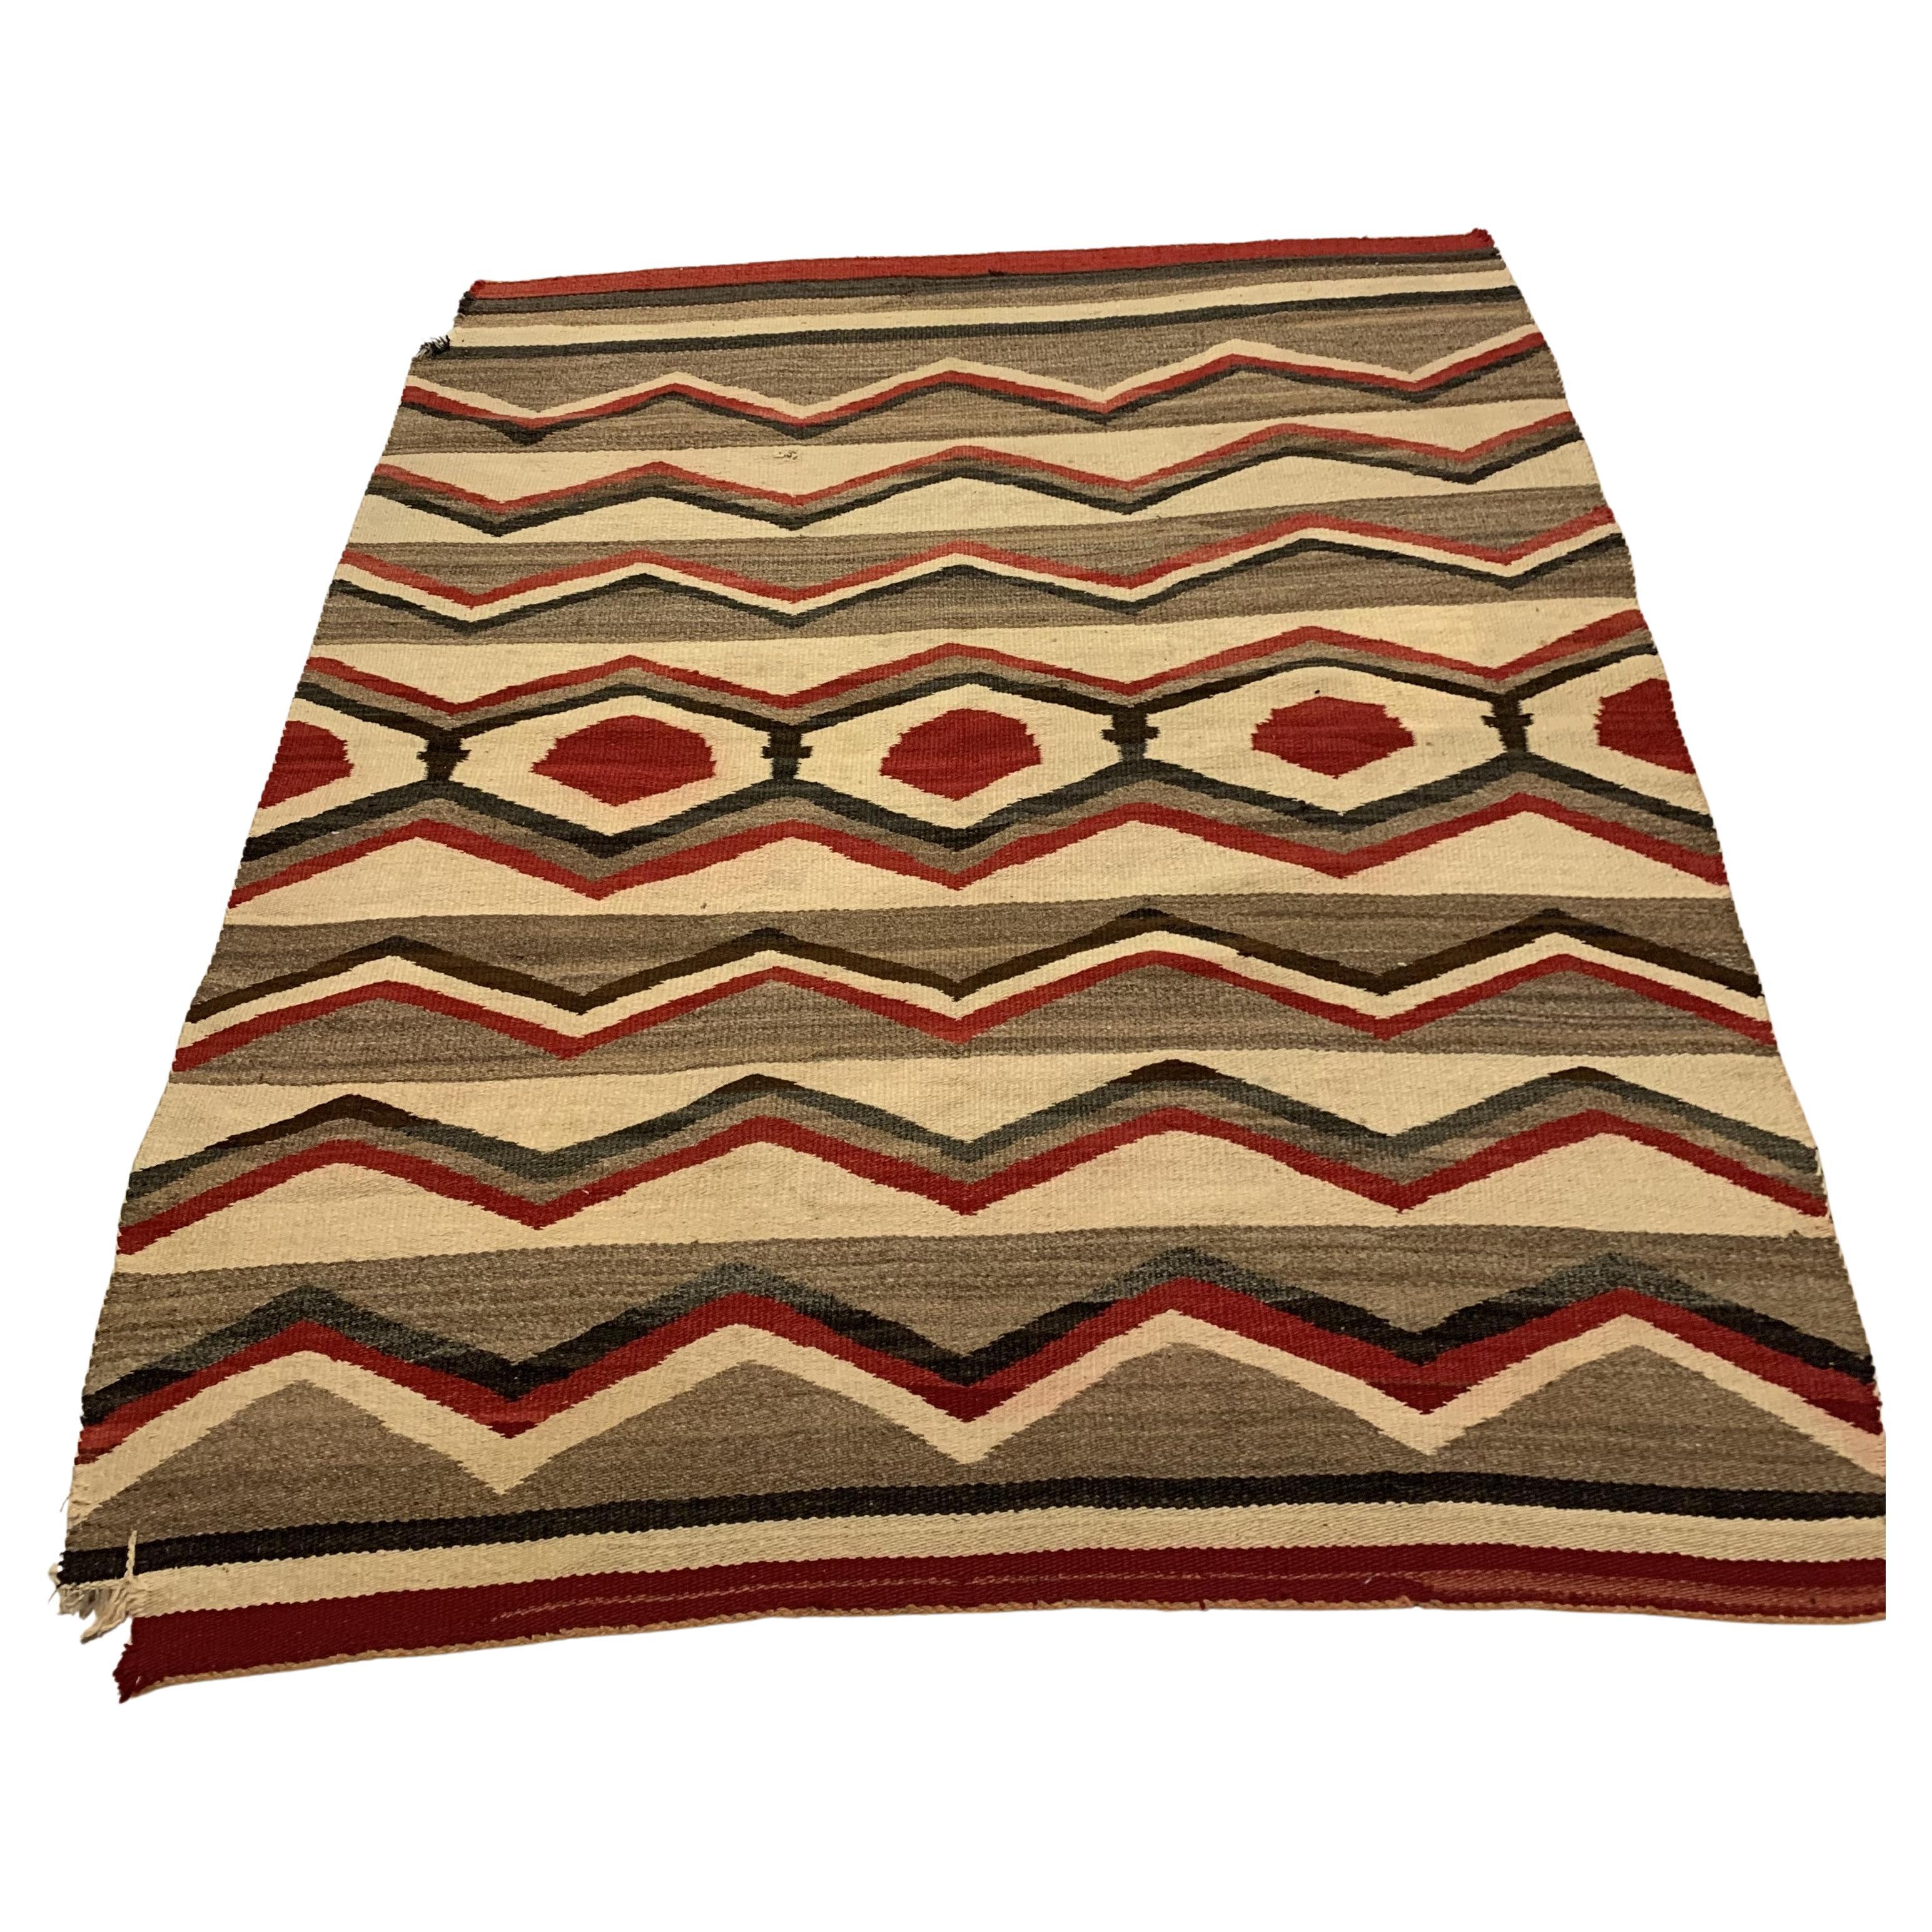 Handgefertigte antike Navajo-Teppichdecke der amerikanischen Ureinwohner 4,6' x 5,4', 1900er Jahre - 2B22